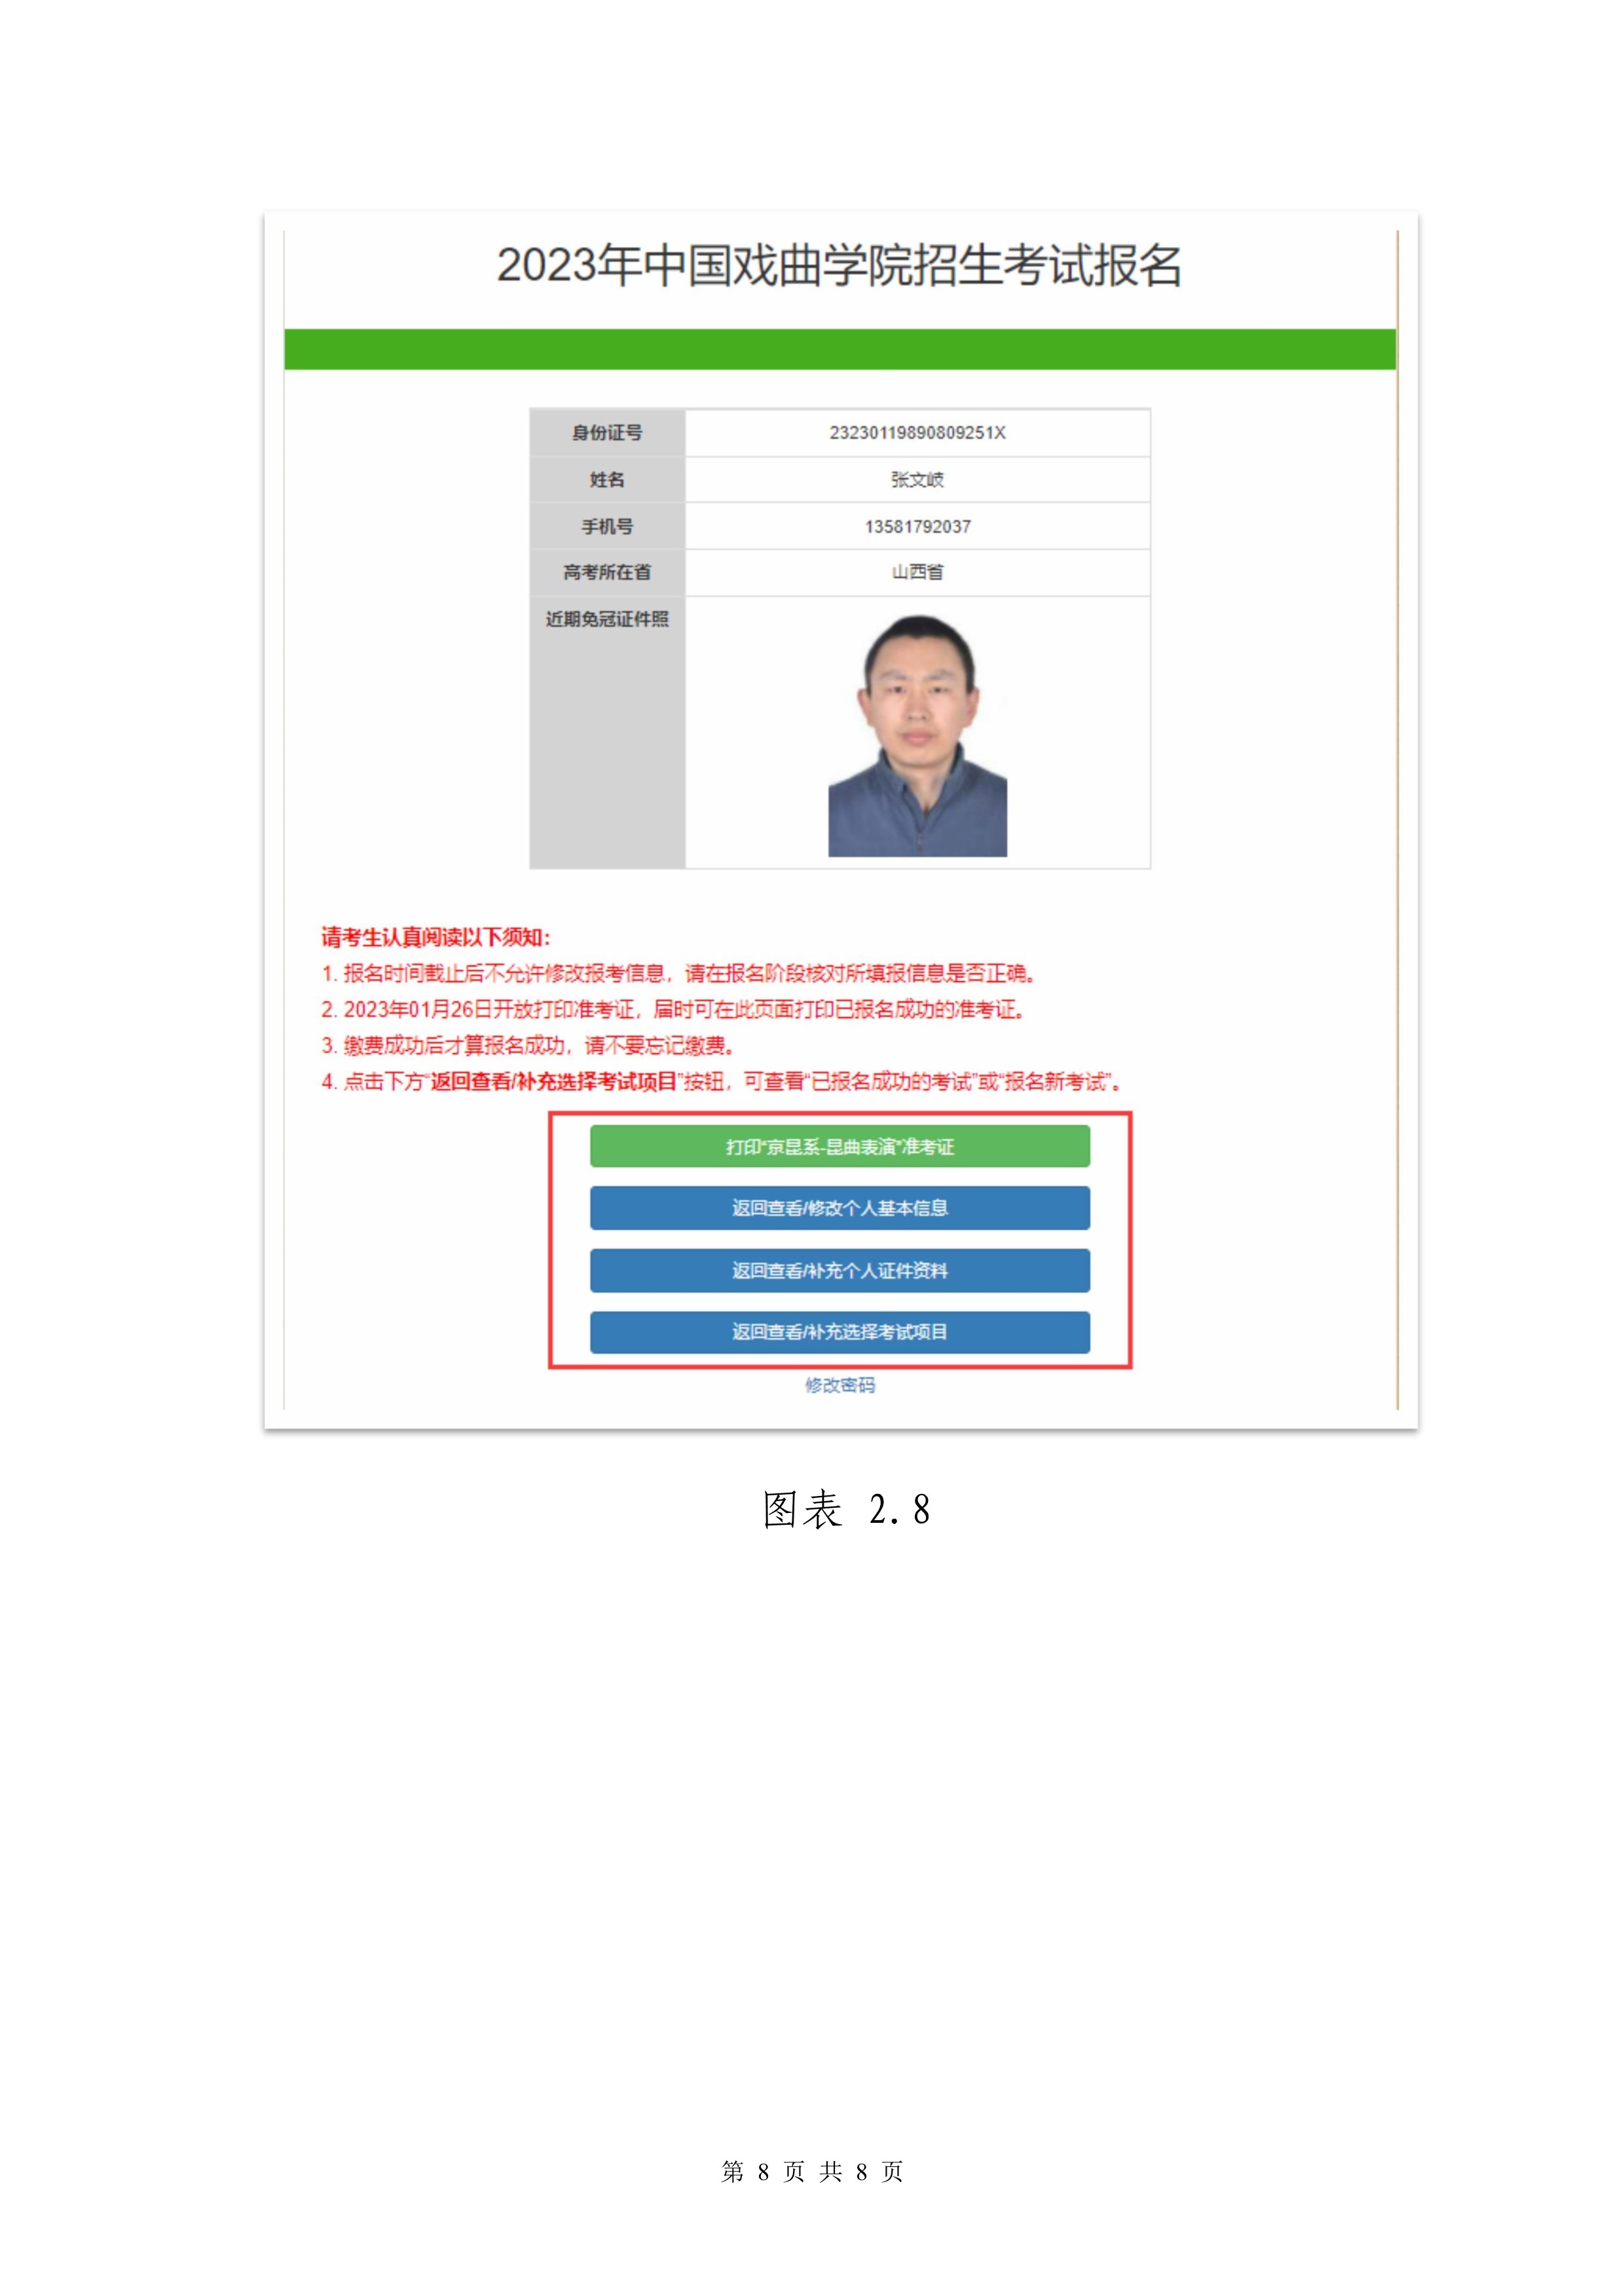 中国戏曲学院2023本科招生专业考试网上报名操作手册_8.jpg